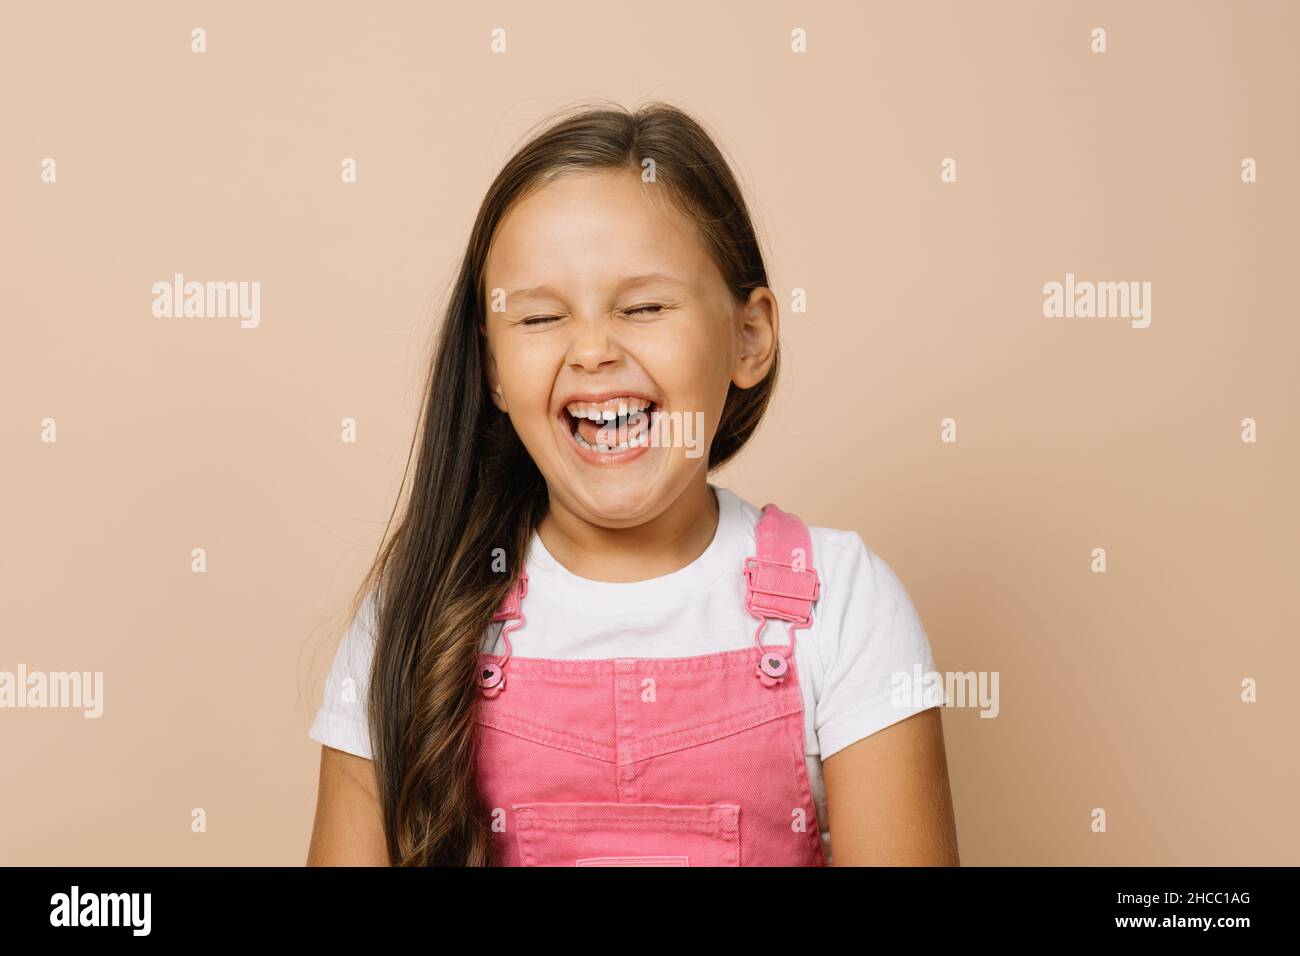 Ritratto del bambino con bocca completamente aperta, occhi chiusi e sorriso eccitato con i denti guardando la macchina fotografica indossando tuta rosa brillante e t-shirt bianca Foto Stock